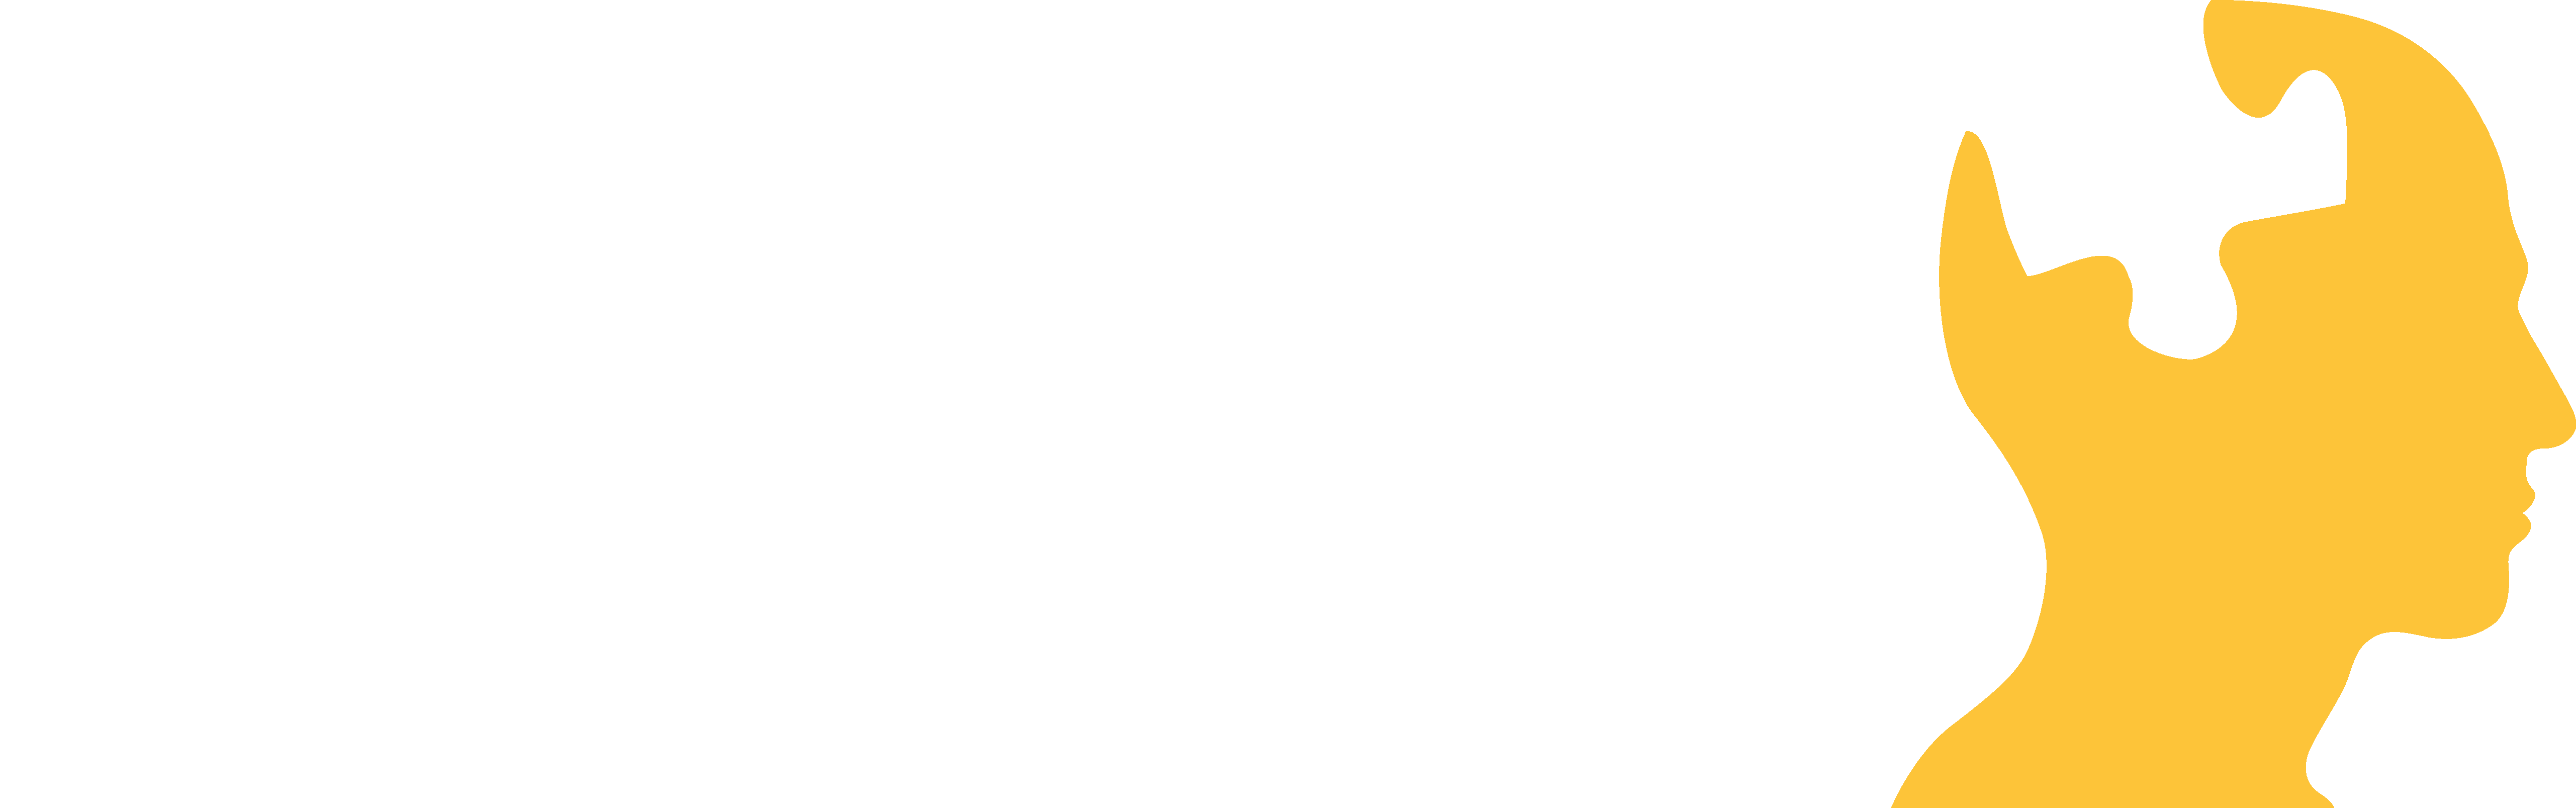 Logotyp för Alzheimerfonden